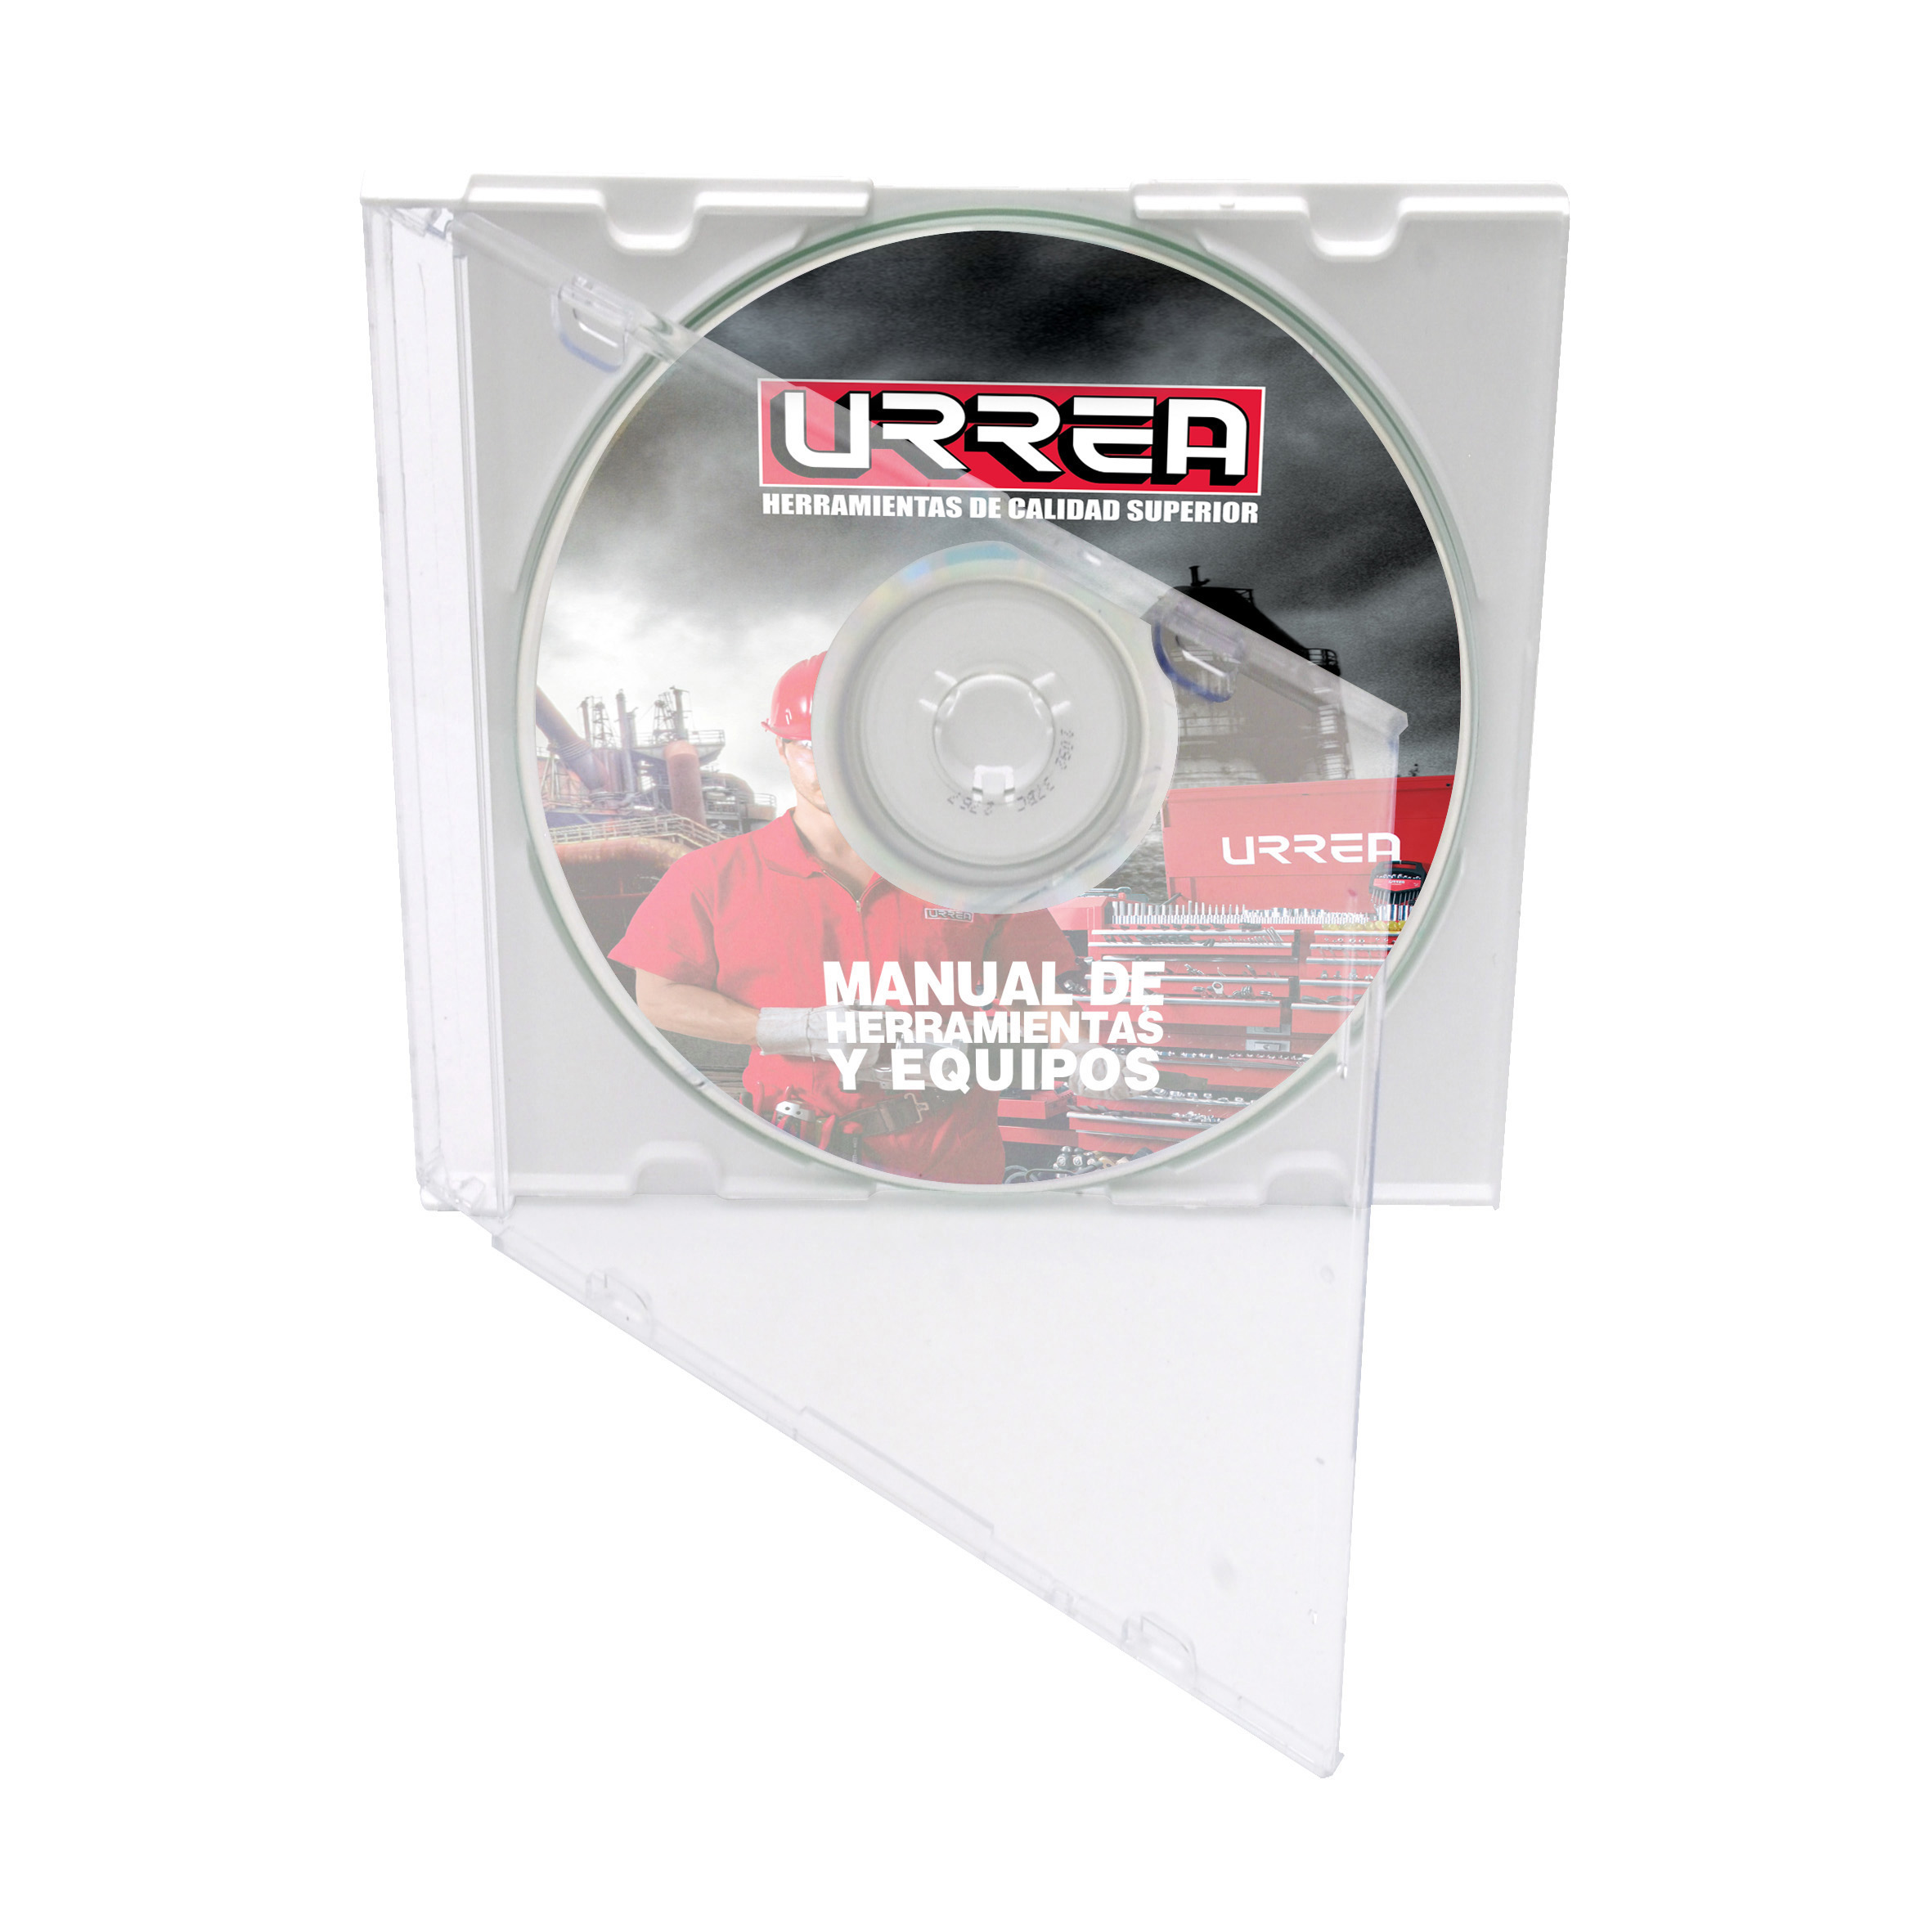 Manual de herramientas Urrea 2010 (CD)